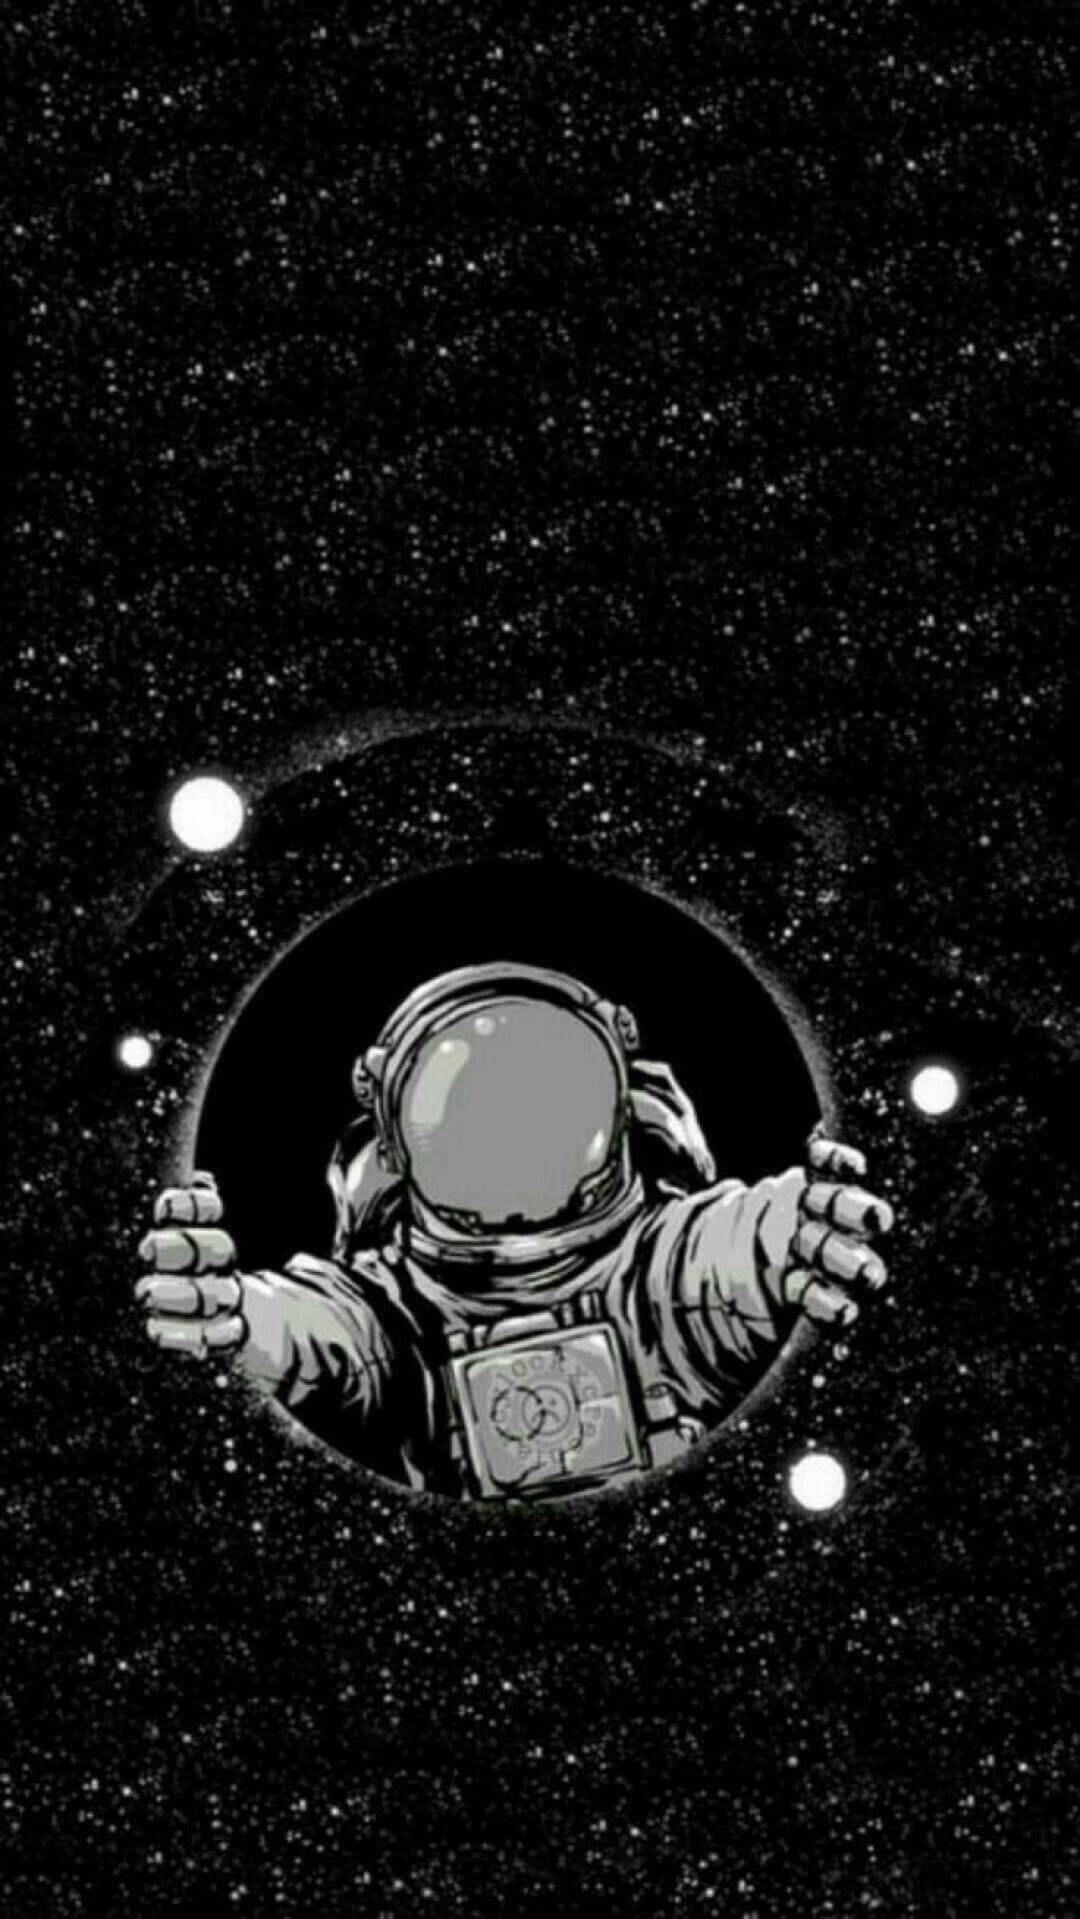 Artede Entrada De Agujero Espacial De Astronauta En Blanco Y Negro Fondo de pantalla